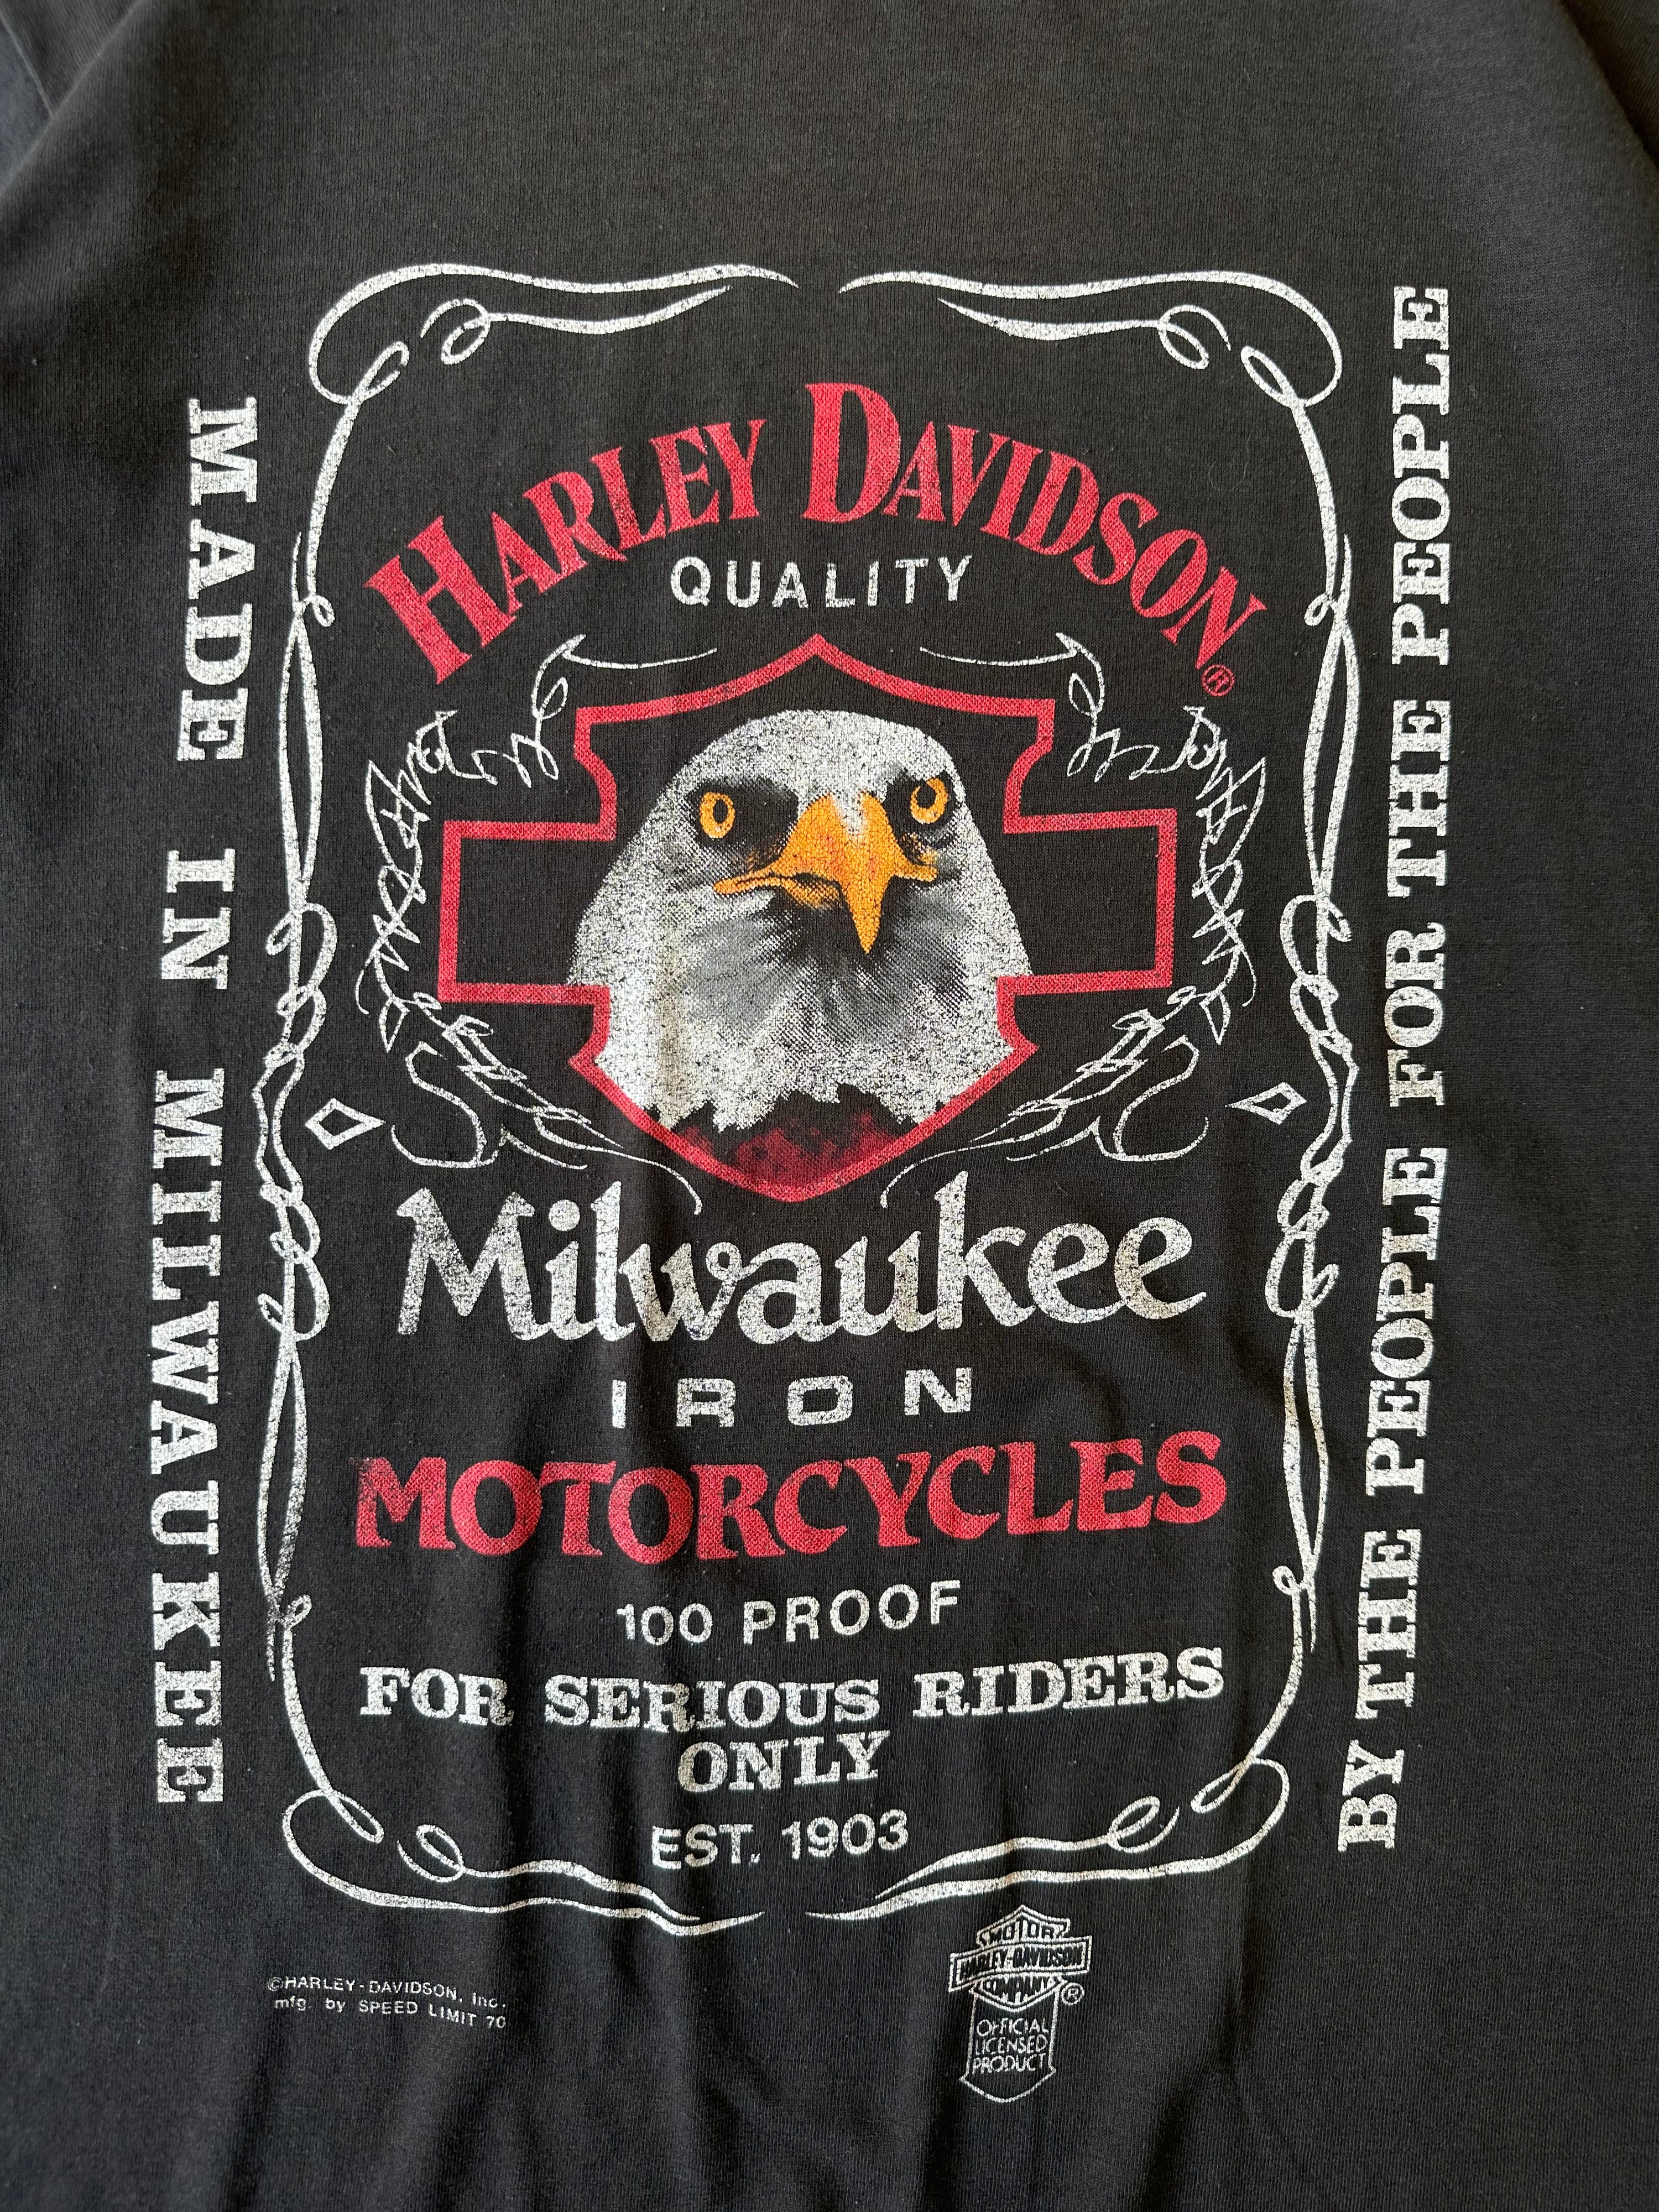 90s Harley Davidson Jack Daniel’s Parody T-Shirt - XL